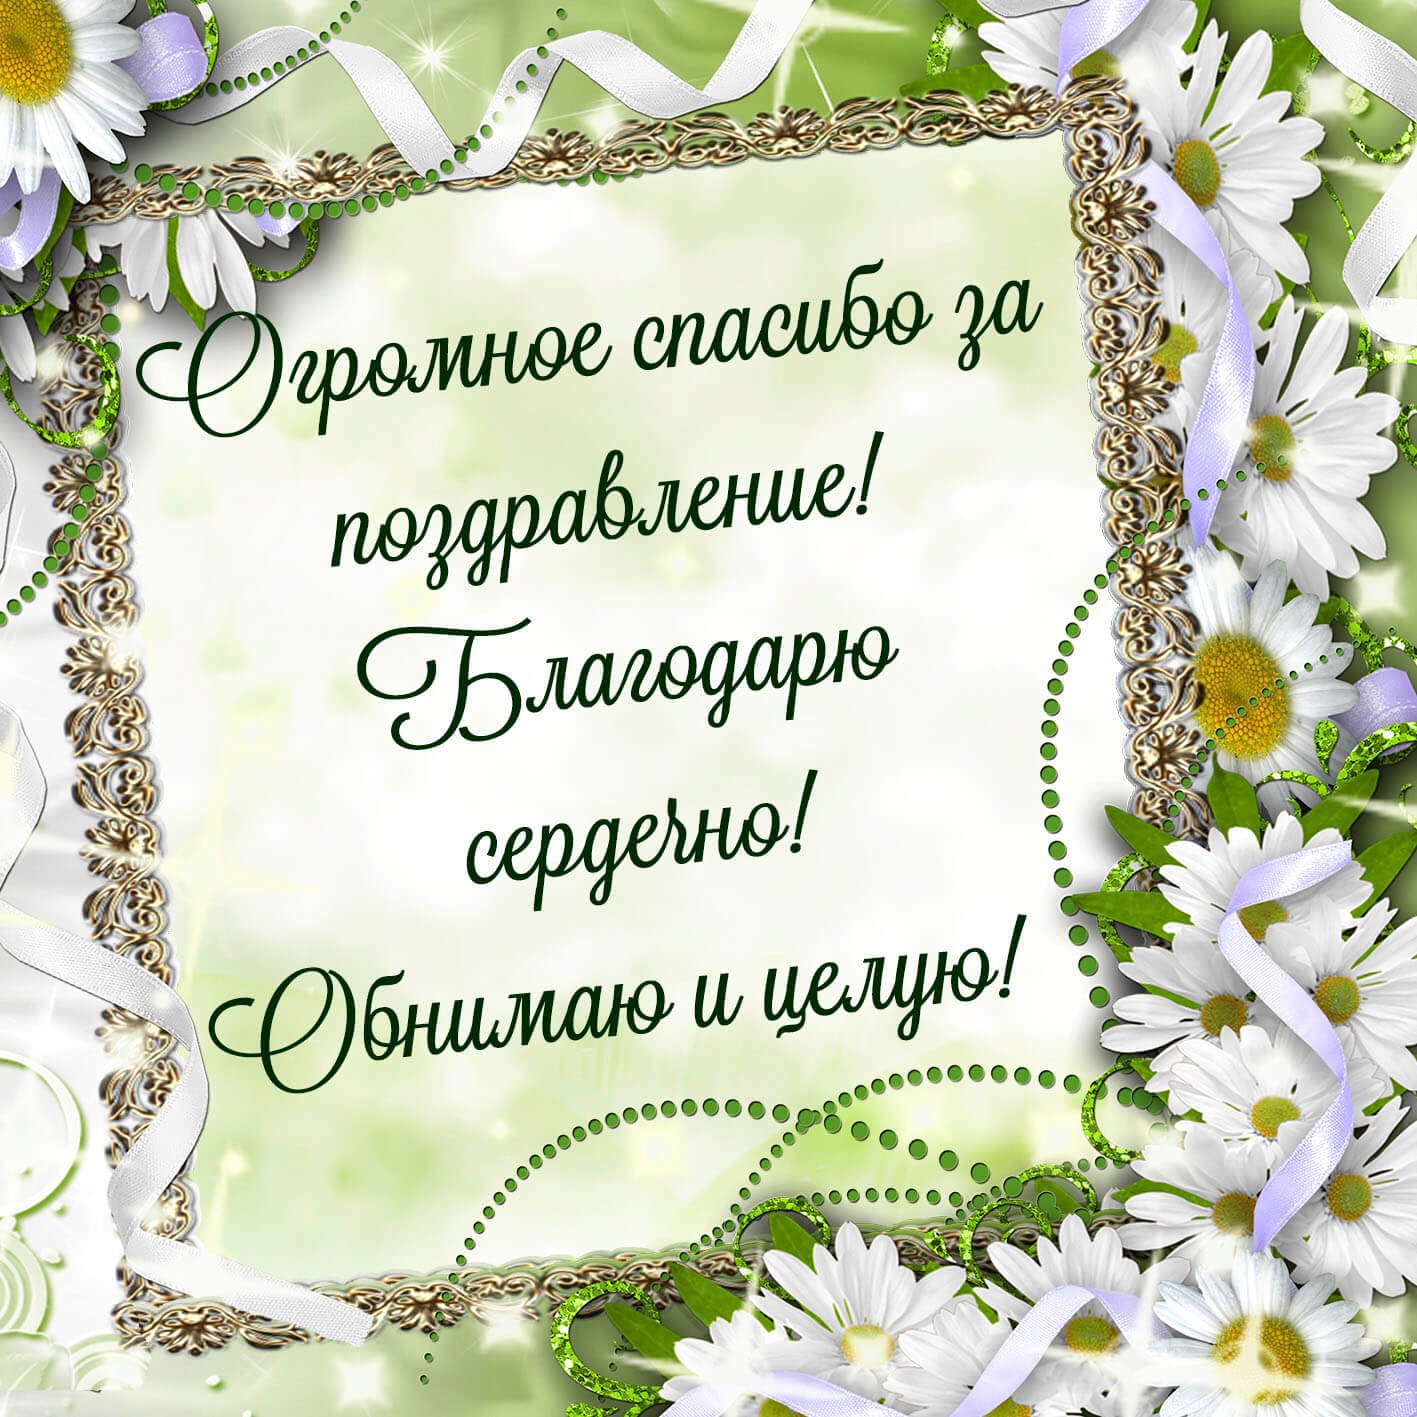 Как поблагодарить друзей за поздравления в Одноклассниках?